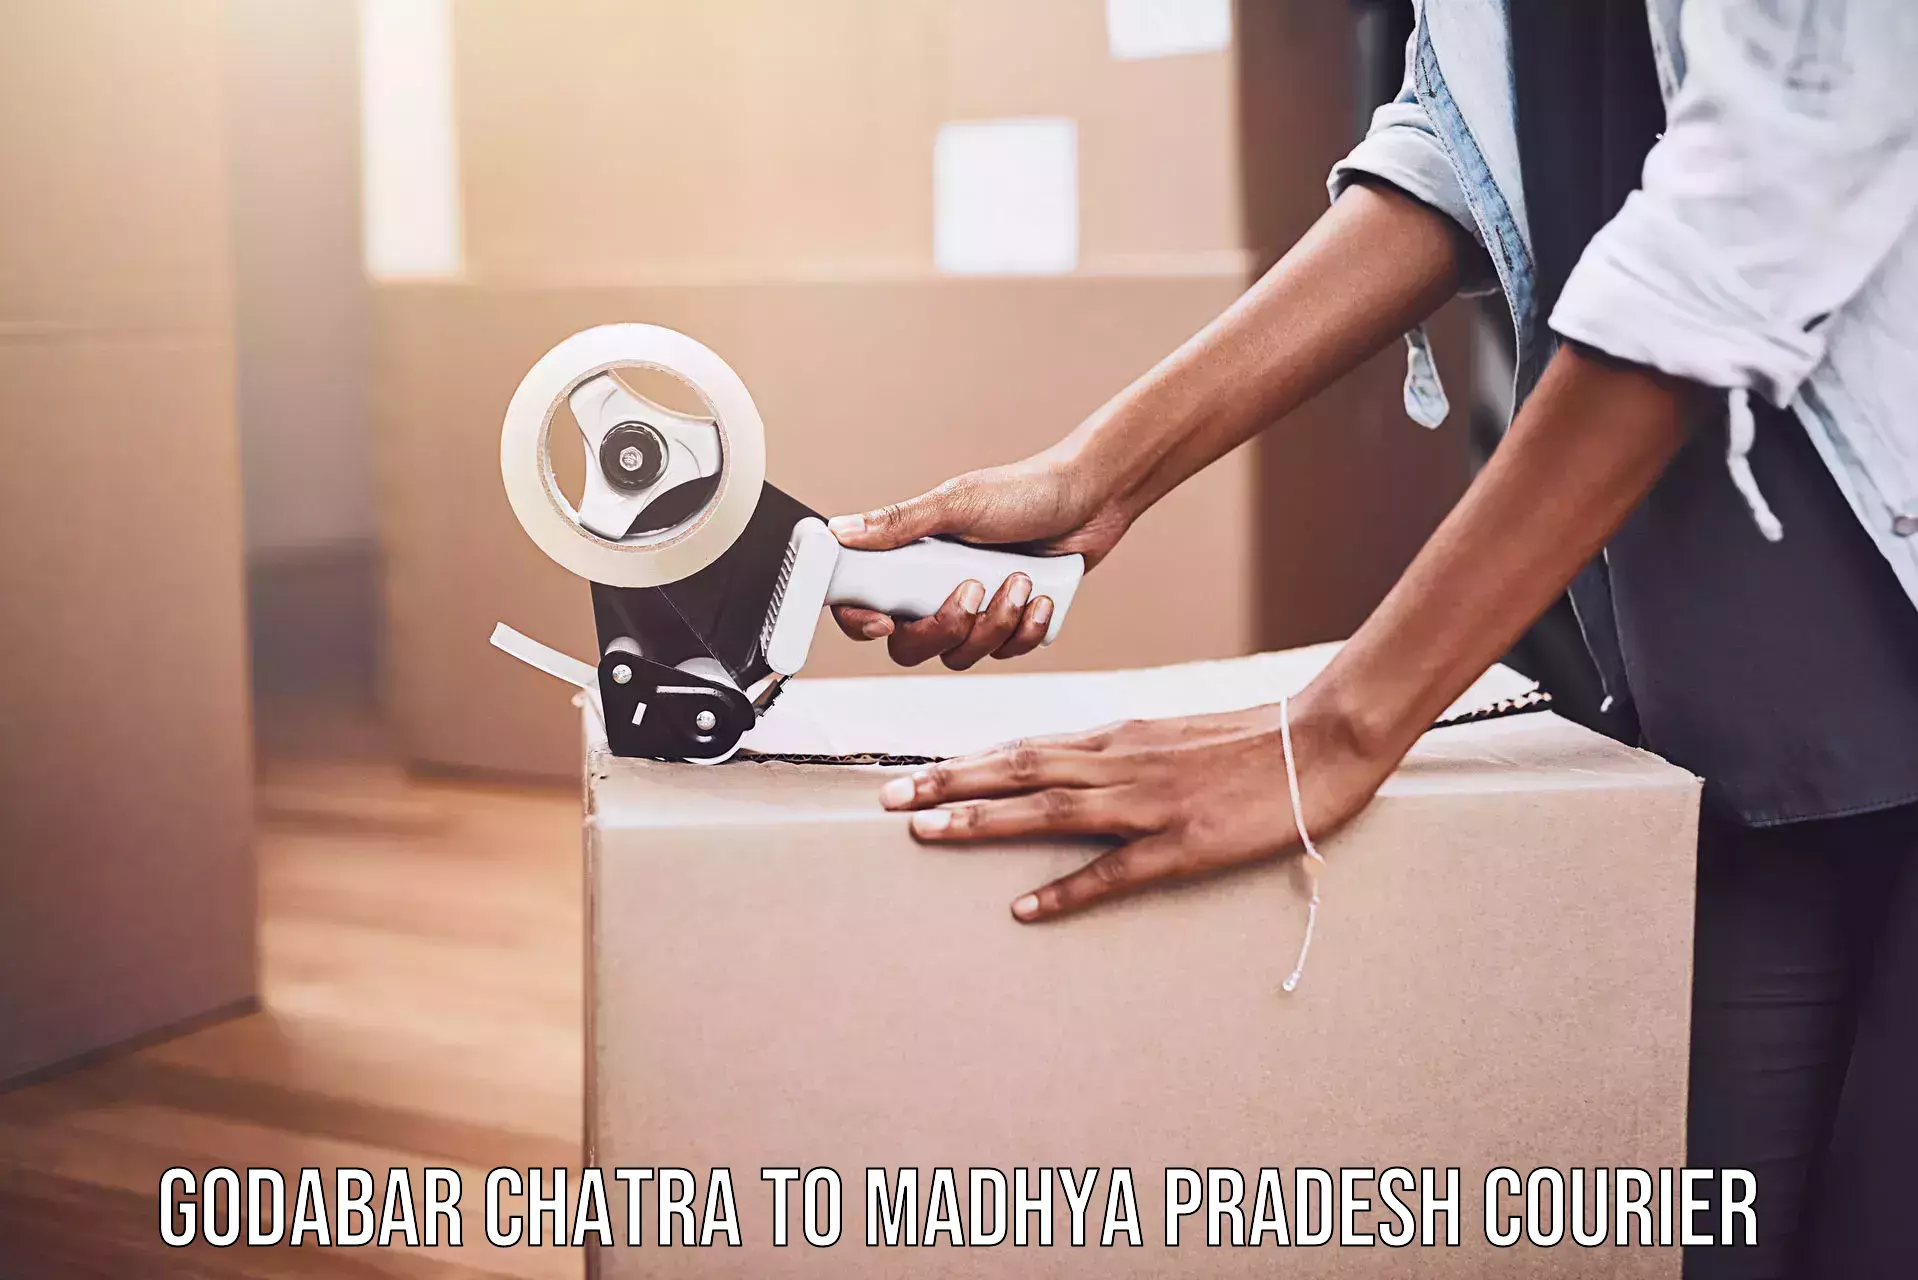 Urban courier service Godabar Chatra to Ashta